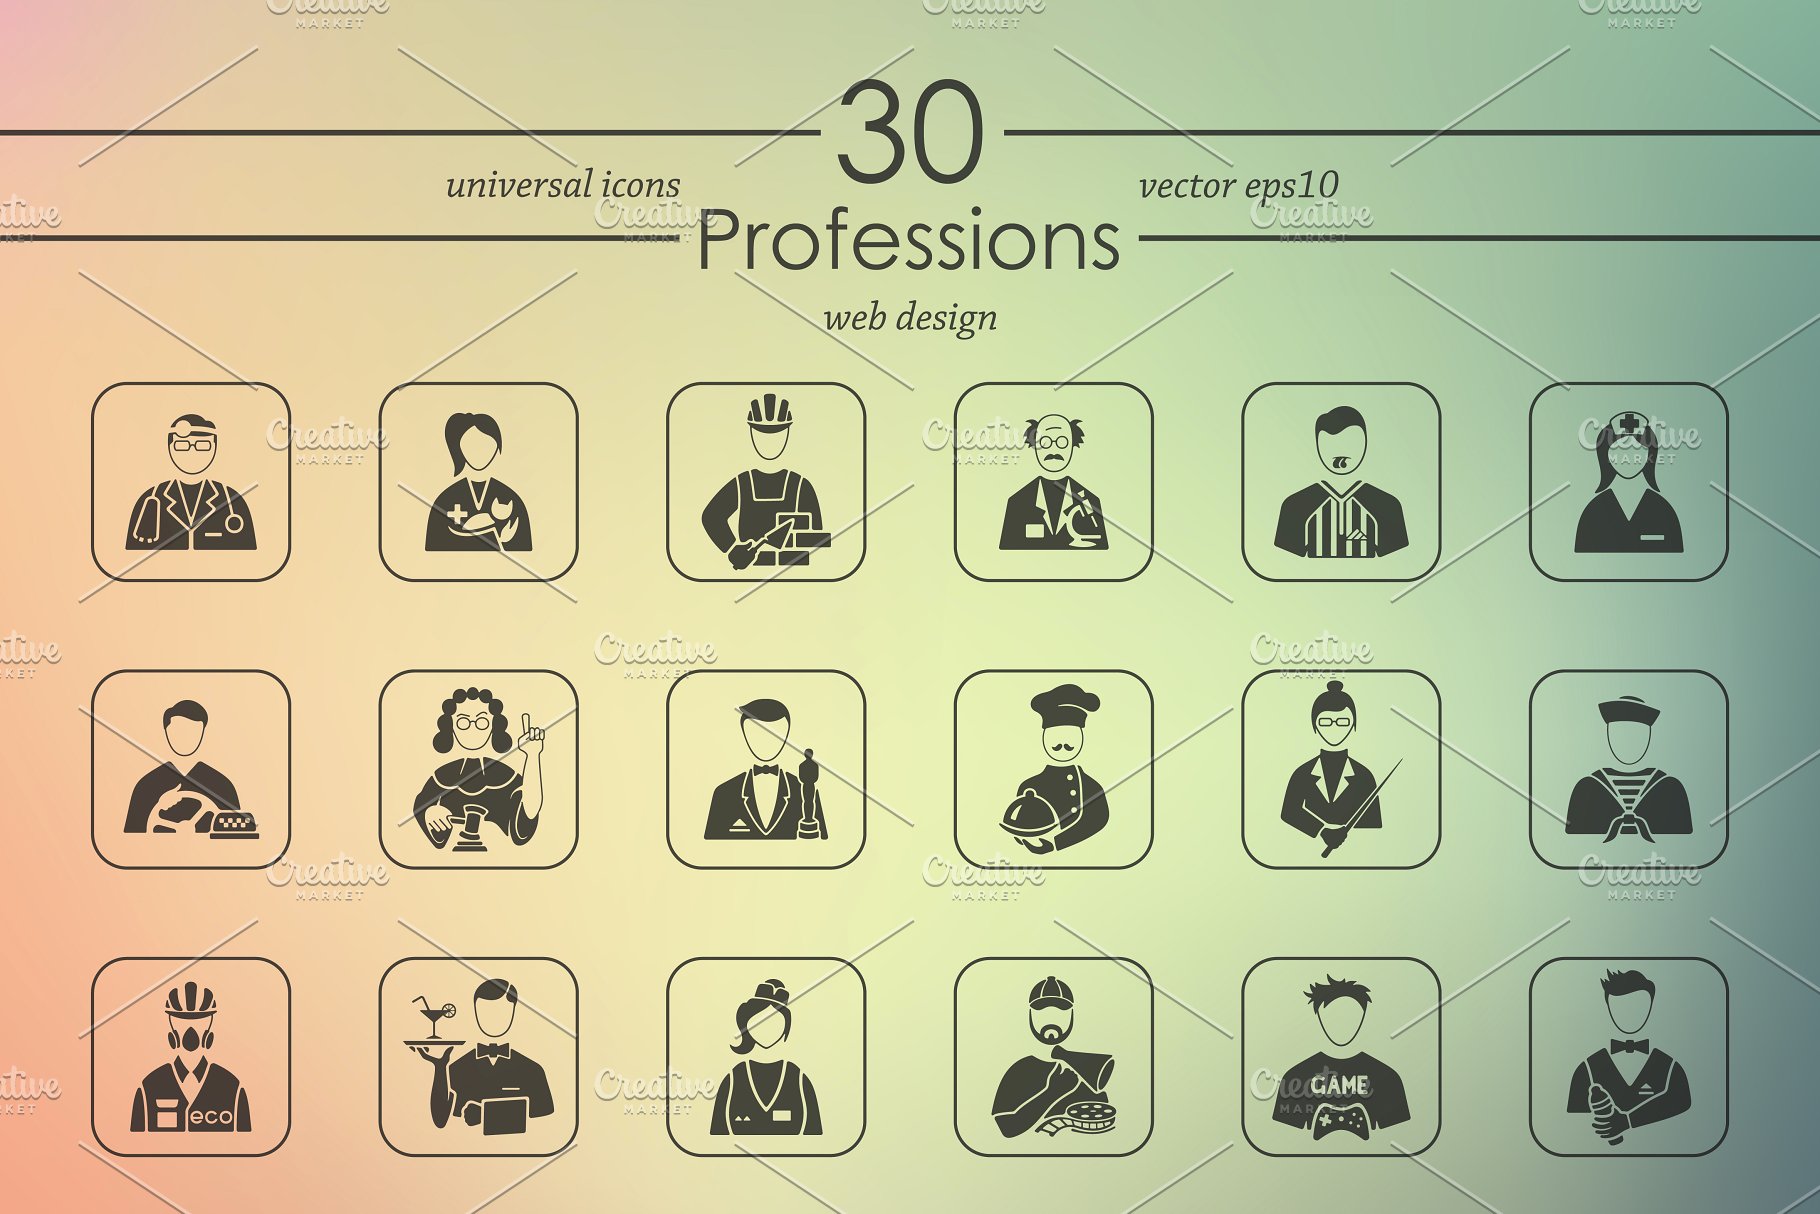 各行各业职业人物肖像icon图标下载 Set of prof